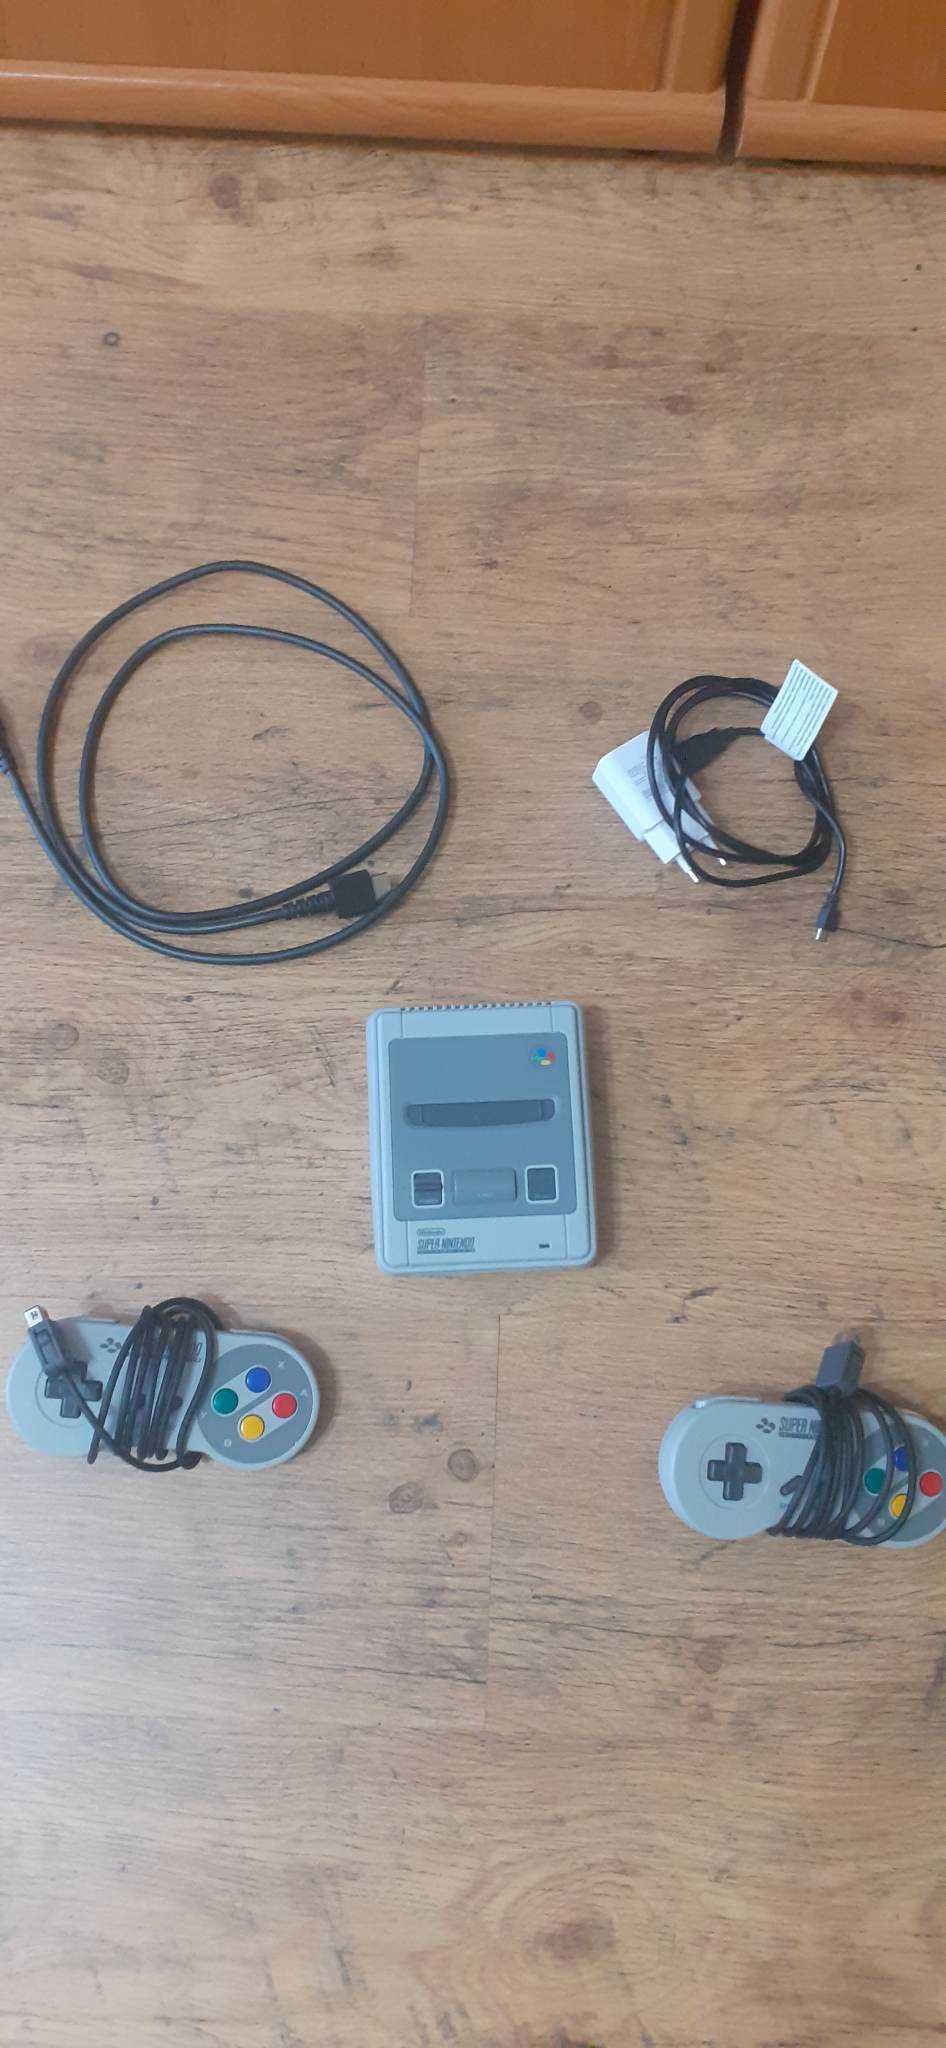 SNES Classic Mini със 2 контролера (Хакнато)